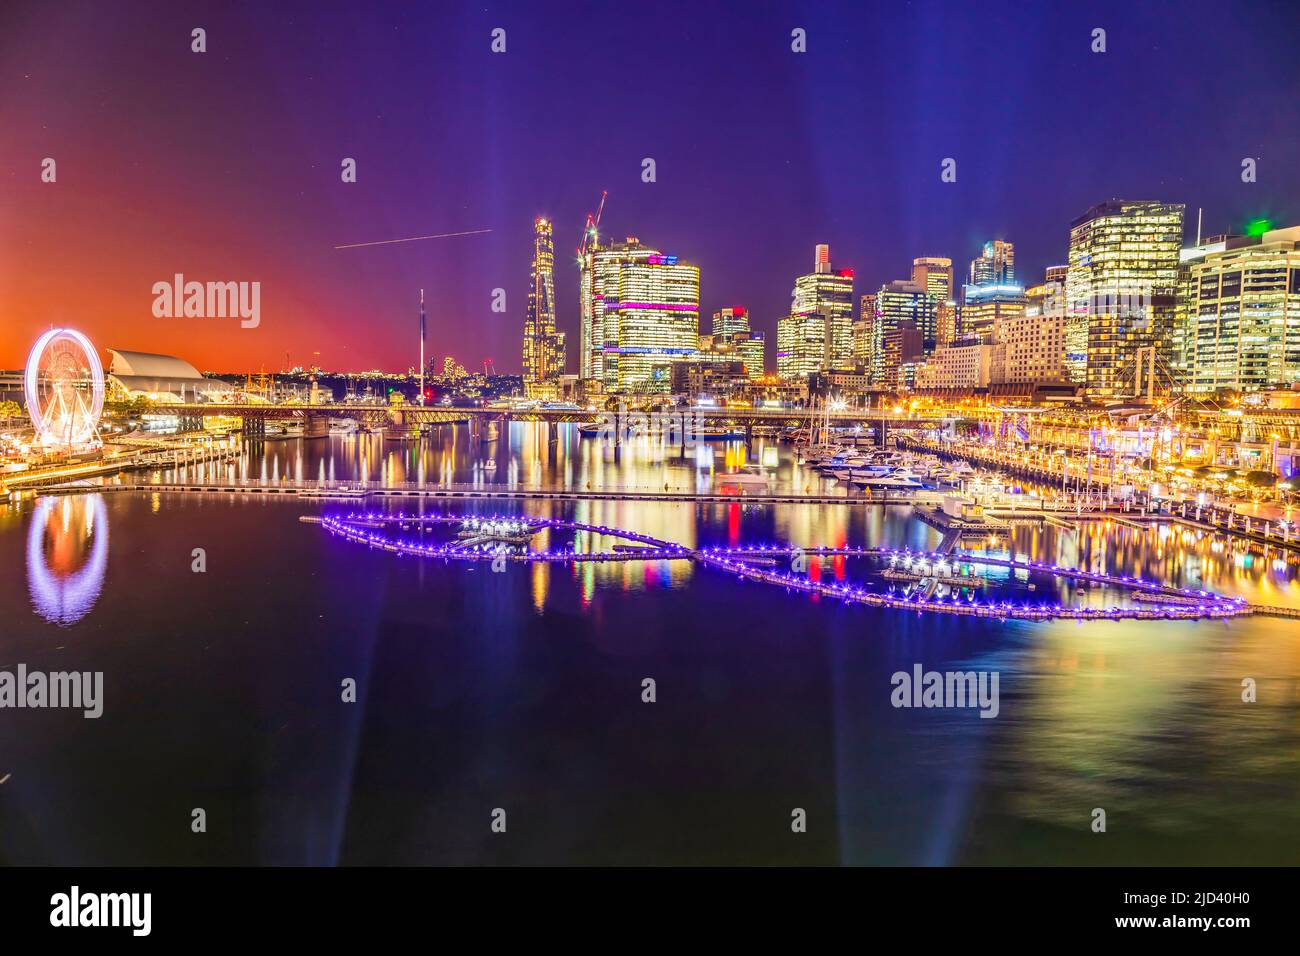 Fontana galleggiante sulle acque del Porto di Darling nella città di Sydney al Vivid Sydney Light Festival. Foto Stock